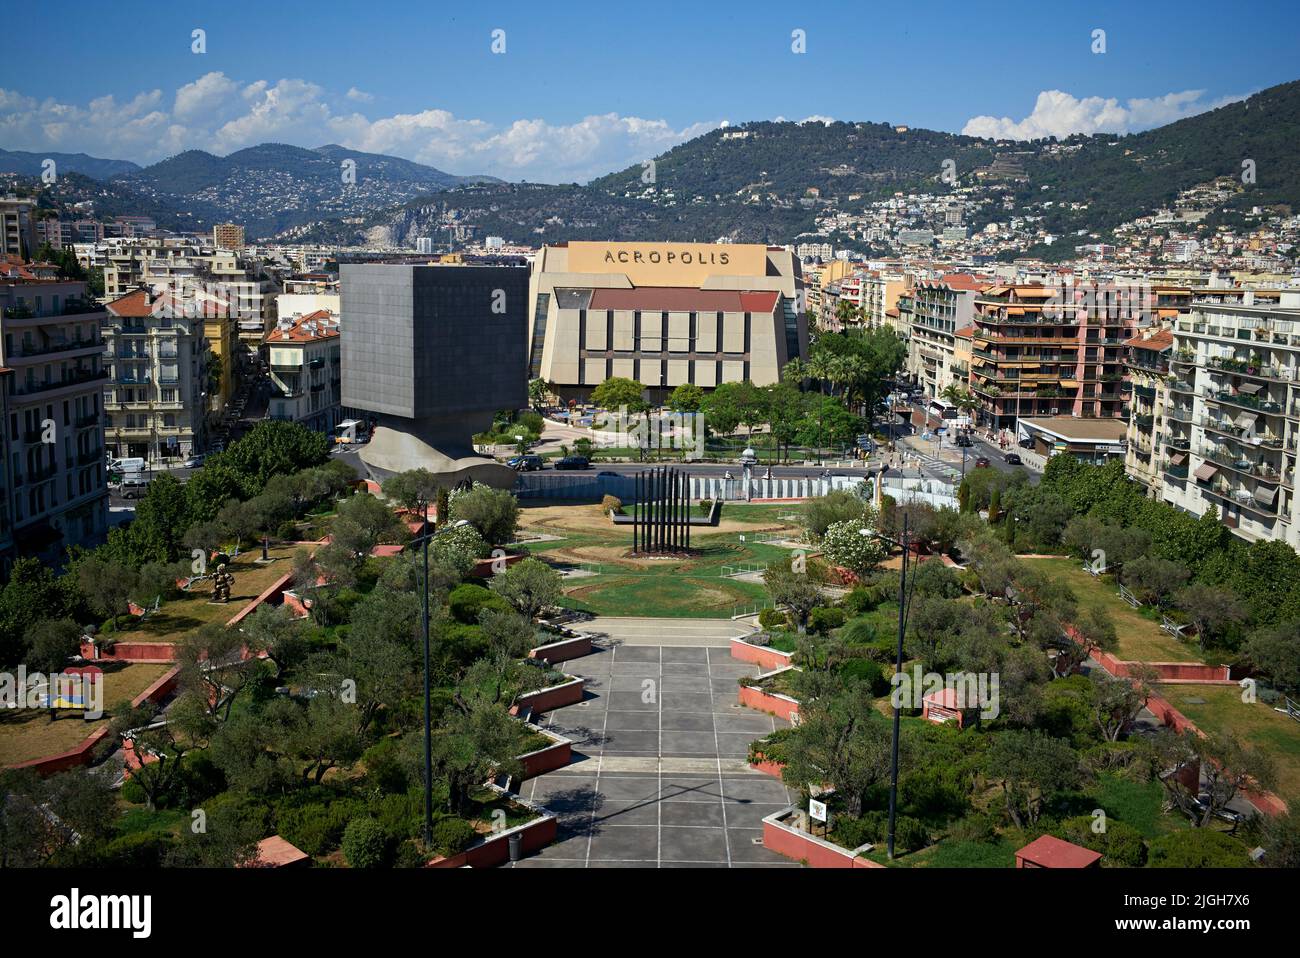 Le Palais des Congrès Acropolis est un centre de congrès situé à Nice, en France. Il accueille divers congrès, foires, concerts, opéras. Banque D'Images